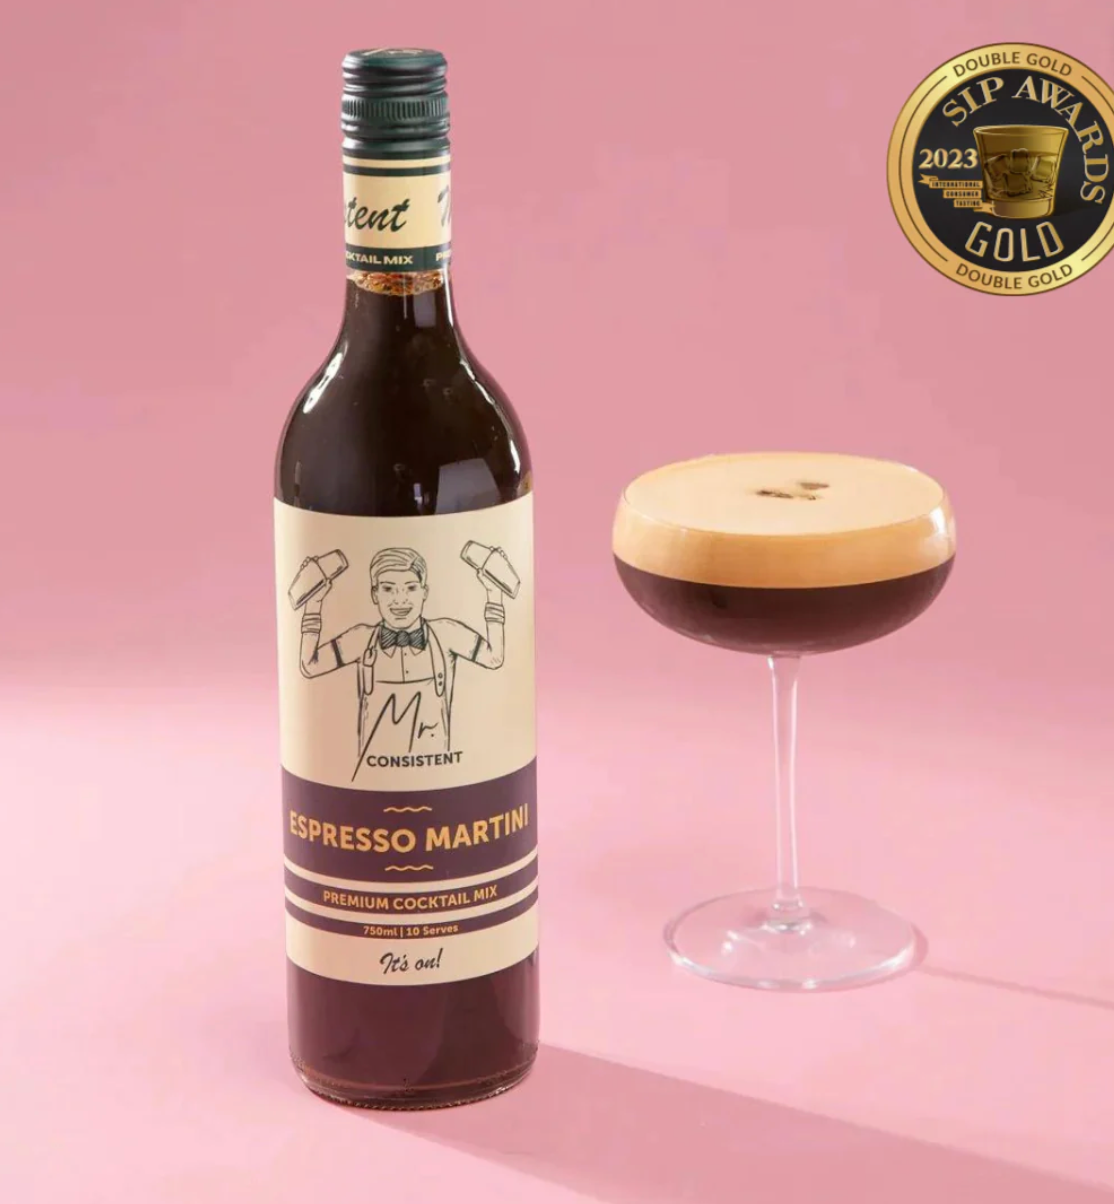 Premium Cocktail Mix / Espresso Martini